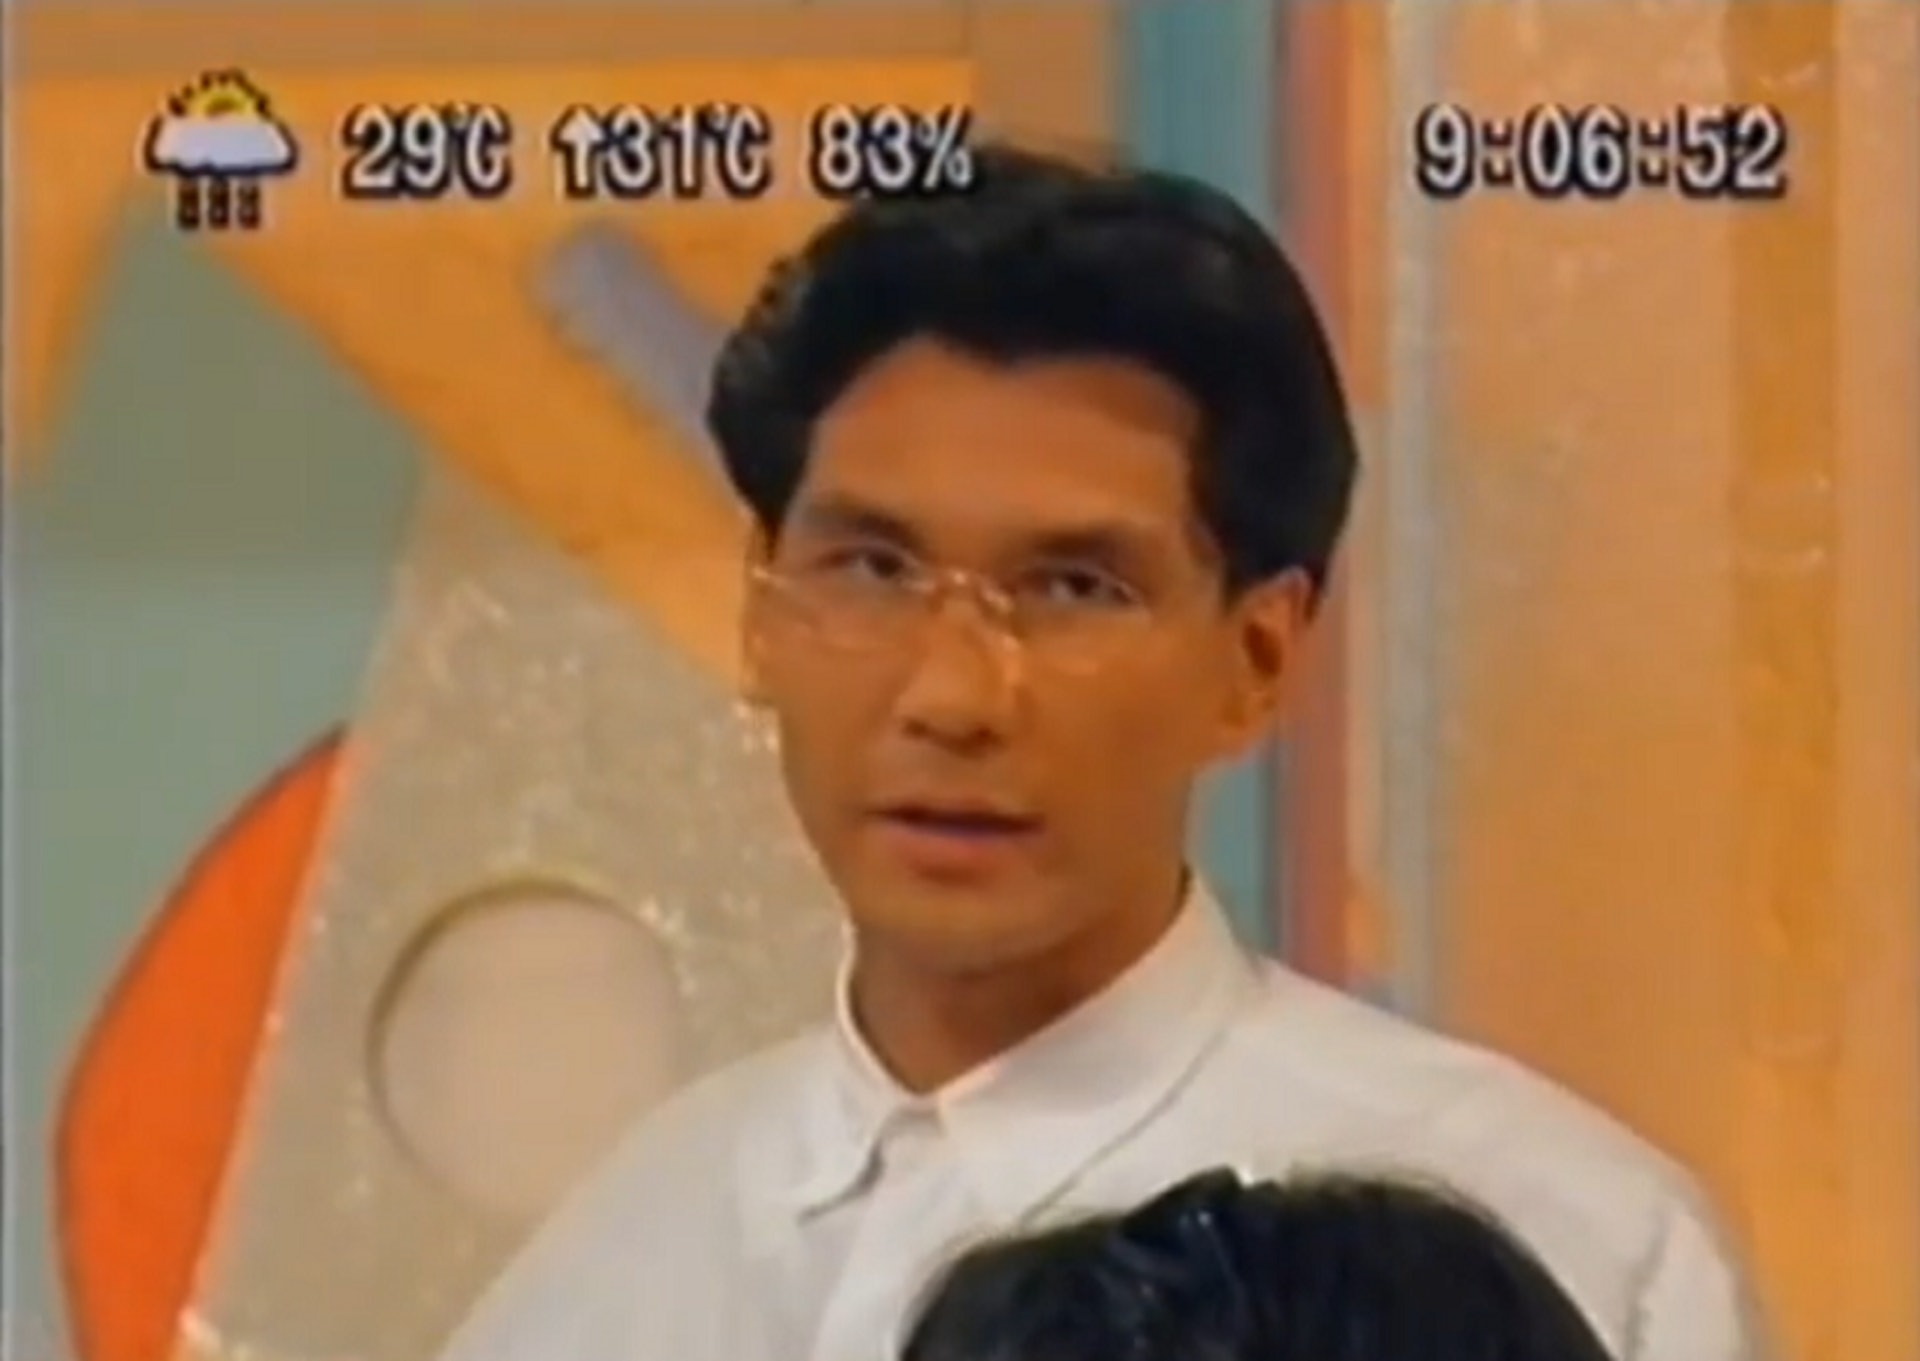 陳啟泰於1990年加盟無綫，第一個主持的節目就是《香港早晨》，這個節目於1993年開始改由新聞部製作，故他成為「末代」主持。「當時監製黃孝廉，同埋藝員科嘅人都覺得我戴眼鏡會斯文啲、好睇啲。」結果從此確立往後30年的幕前形象。（YouTube截圖）